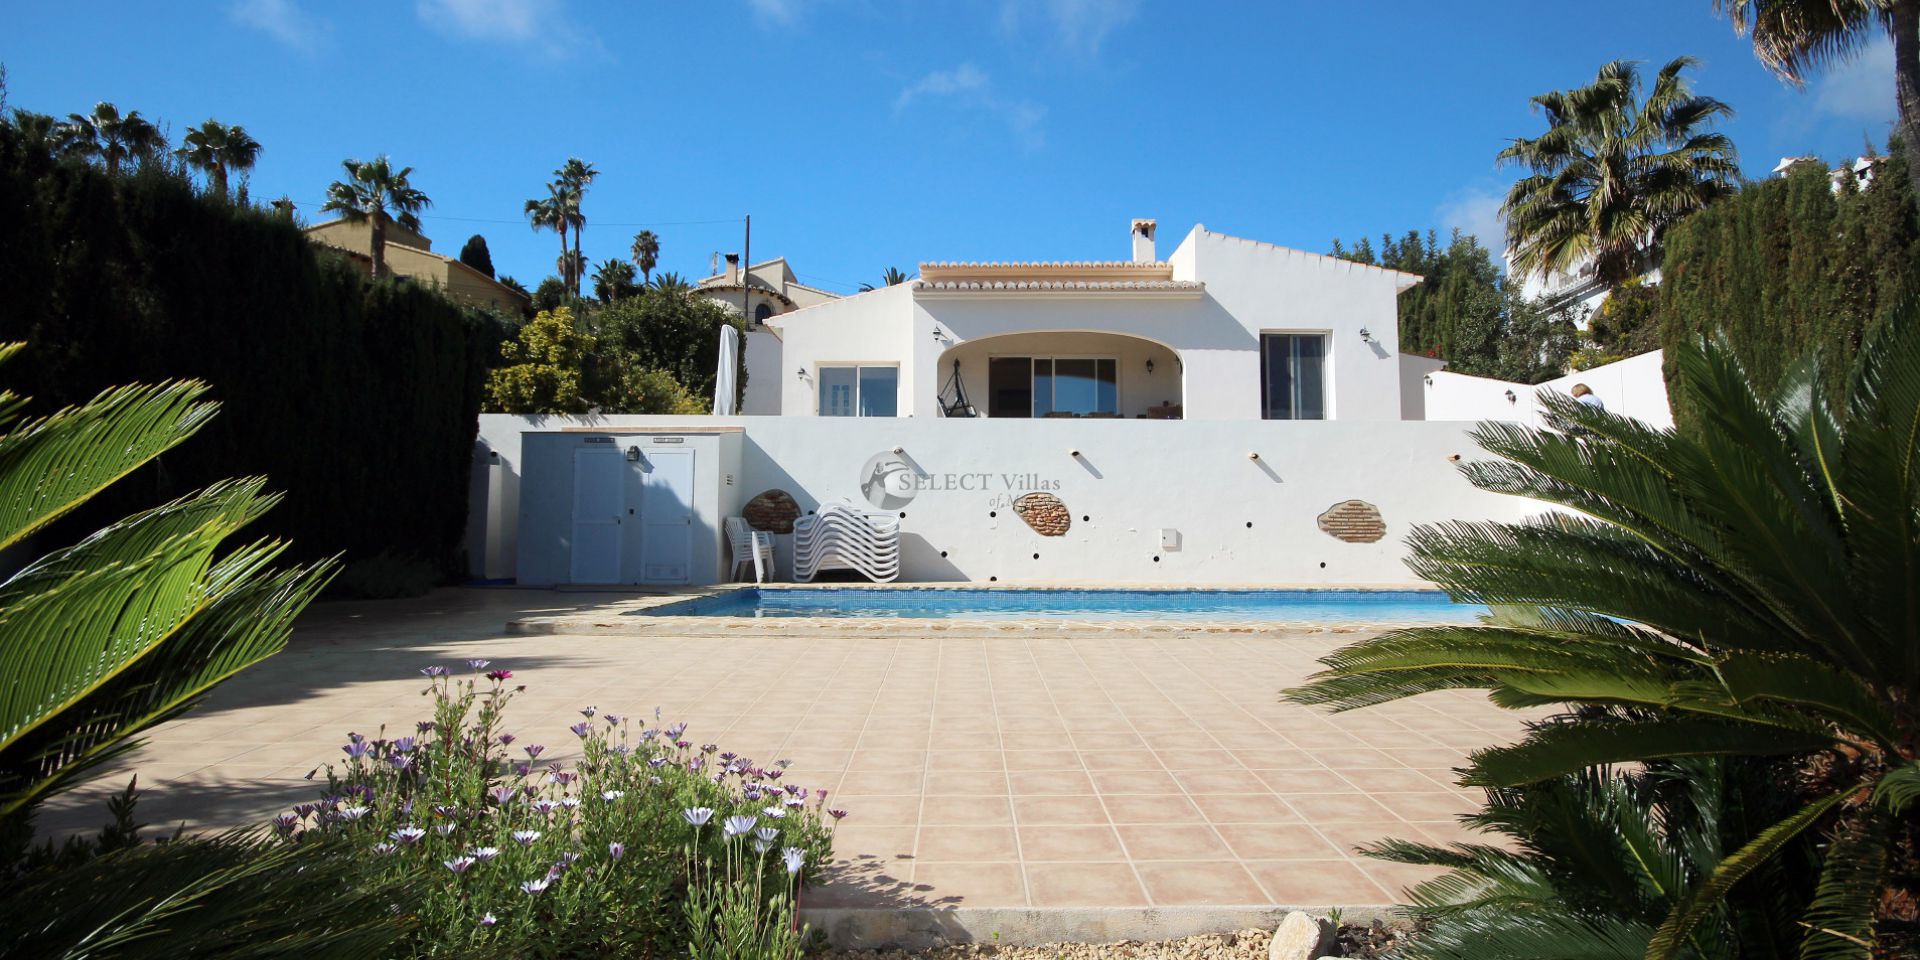 Modern and attractive villa for sale in Benissa Costa